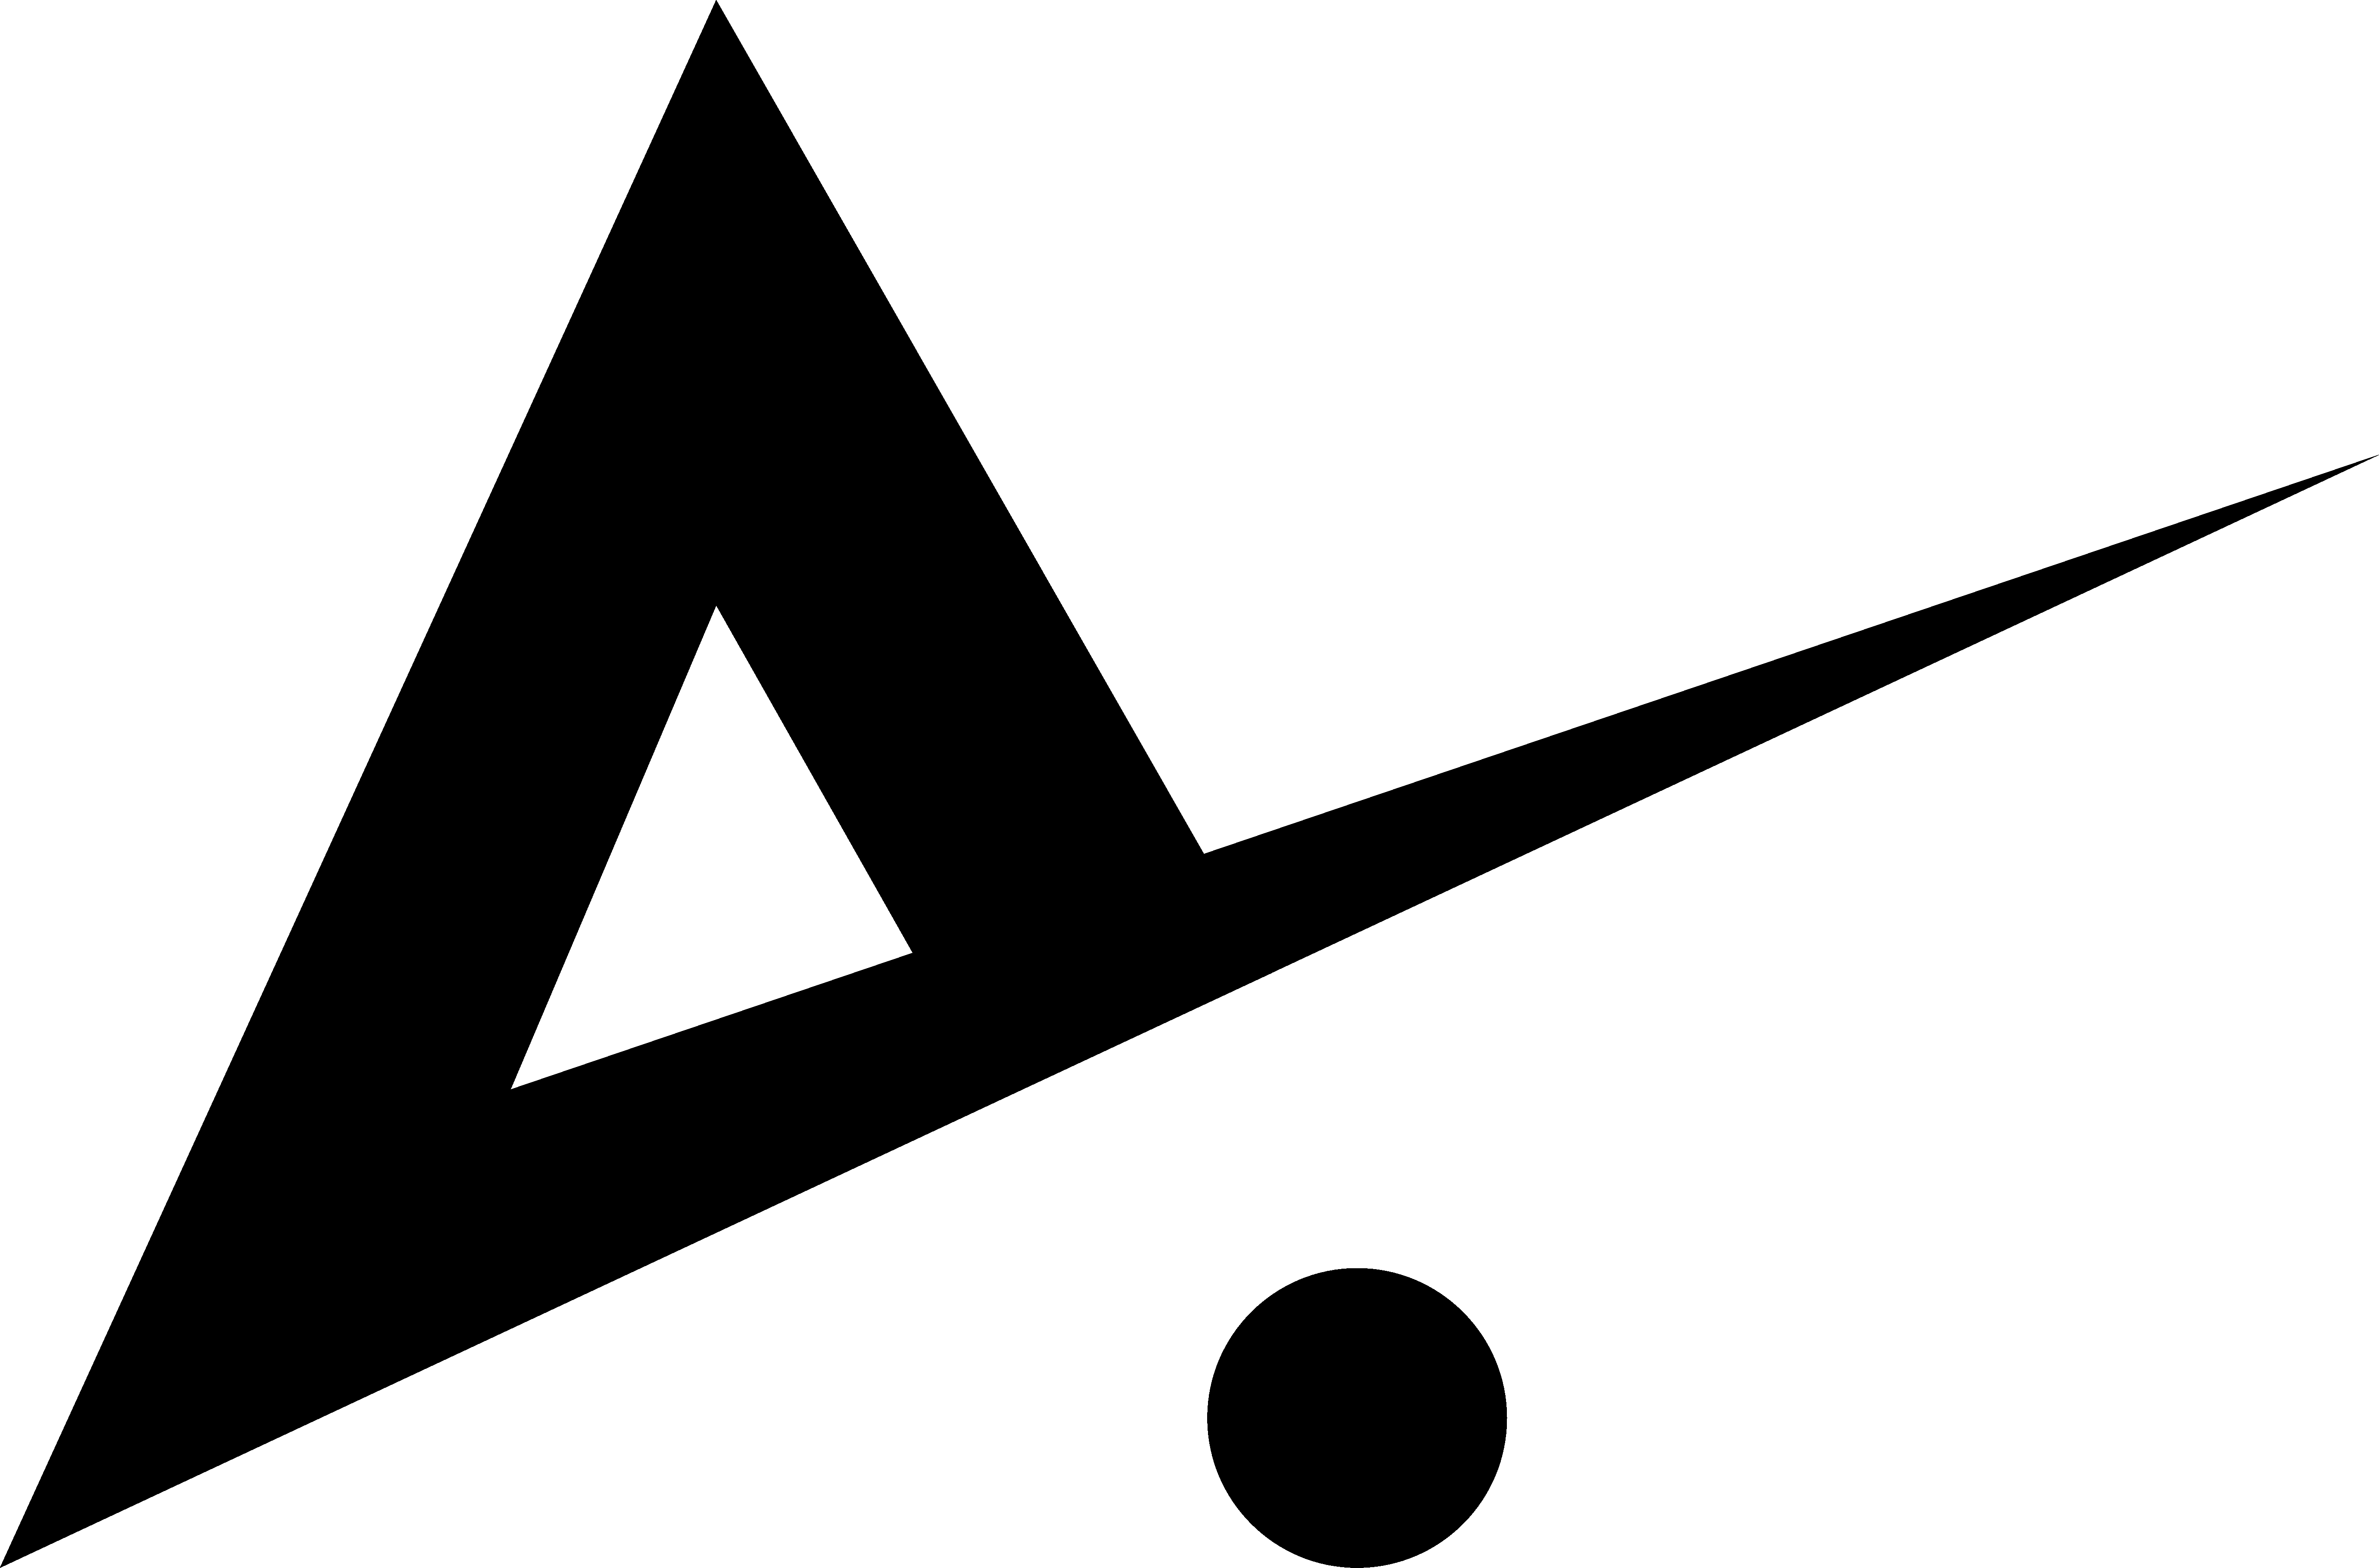 alexei-kashin-logo